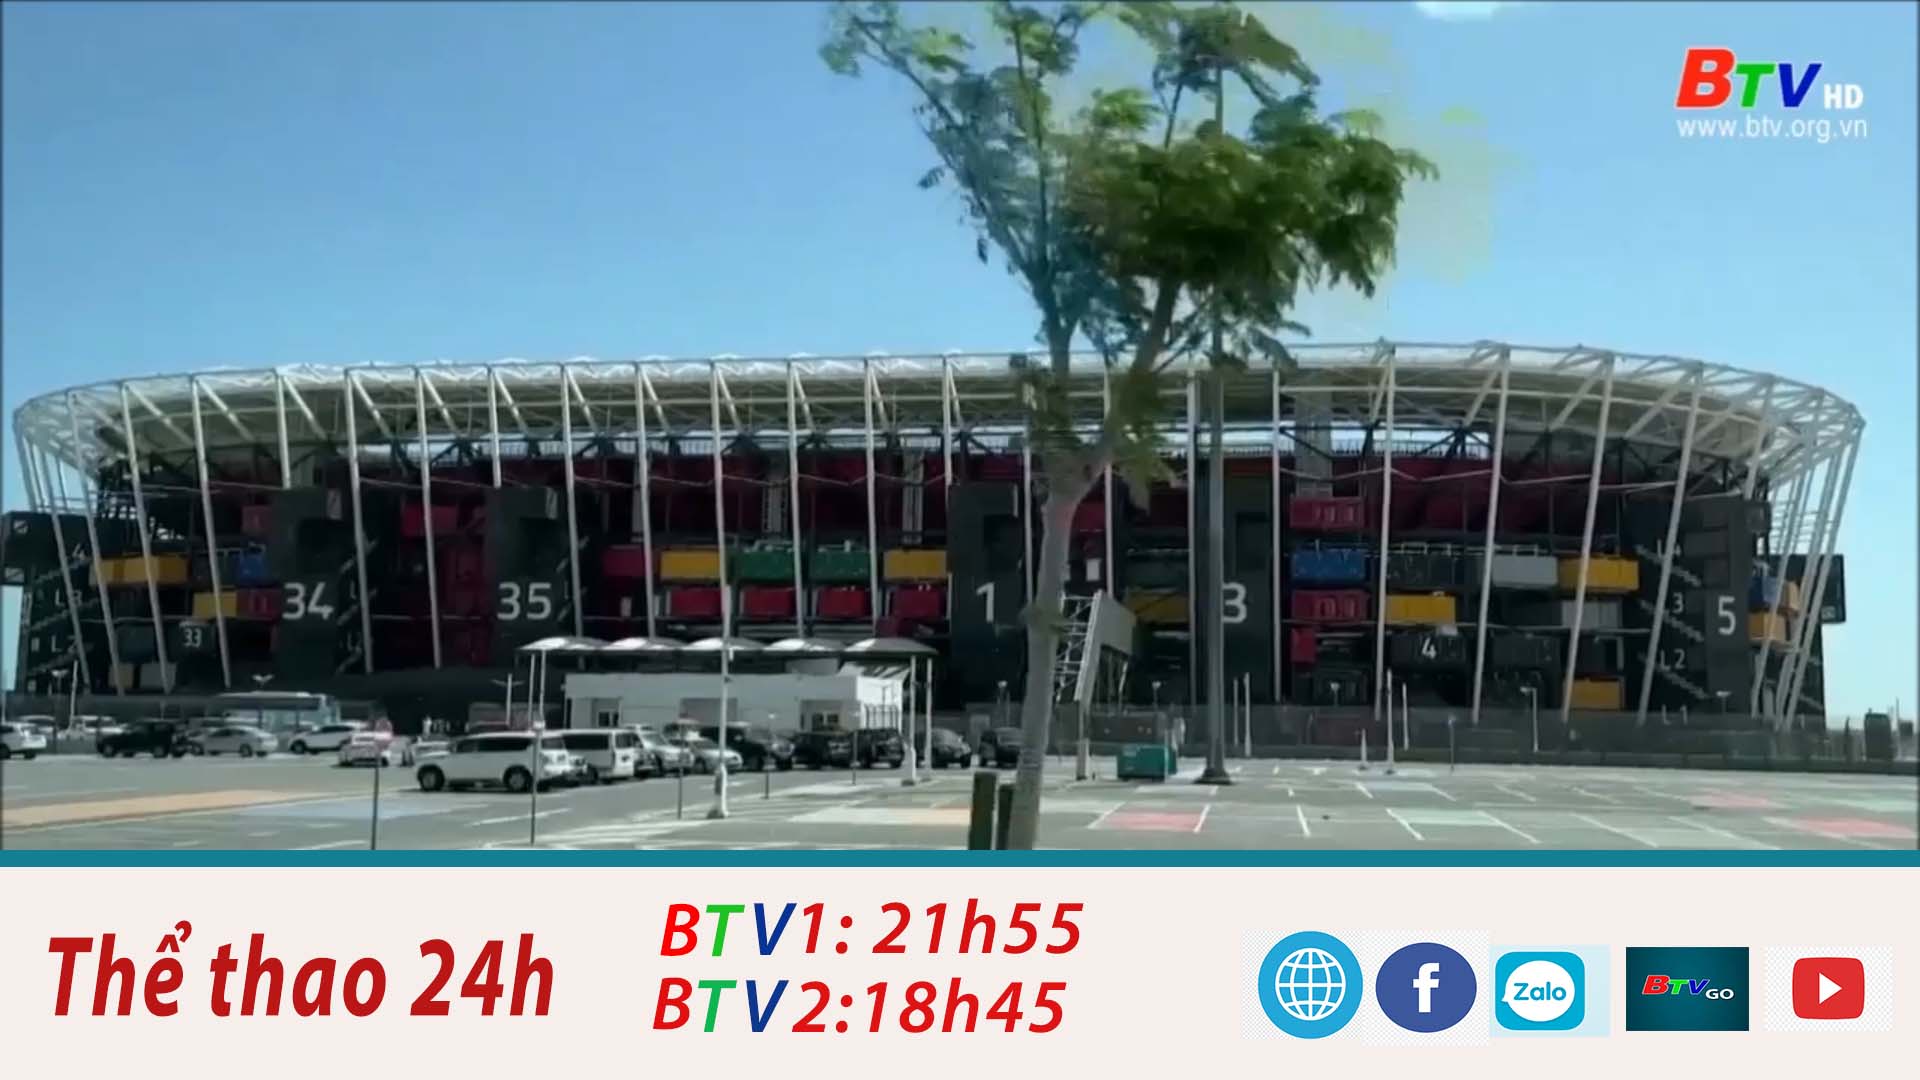 Sân vận động 974 kết thúc sứ mệnh sau trận đấu giữa Hàn Quốc và Brazil